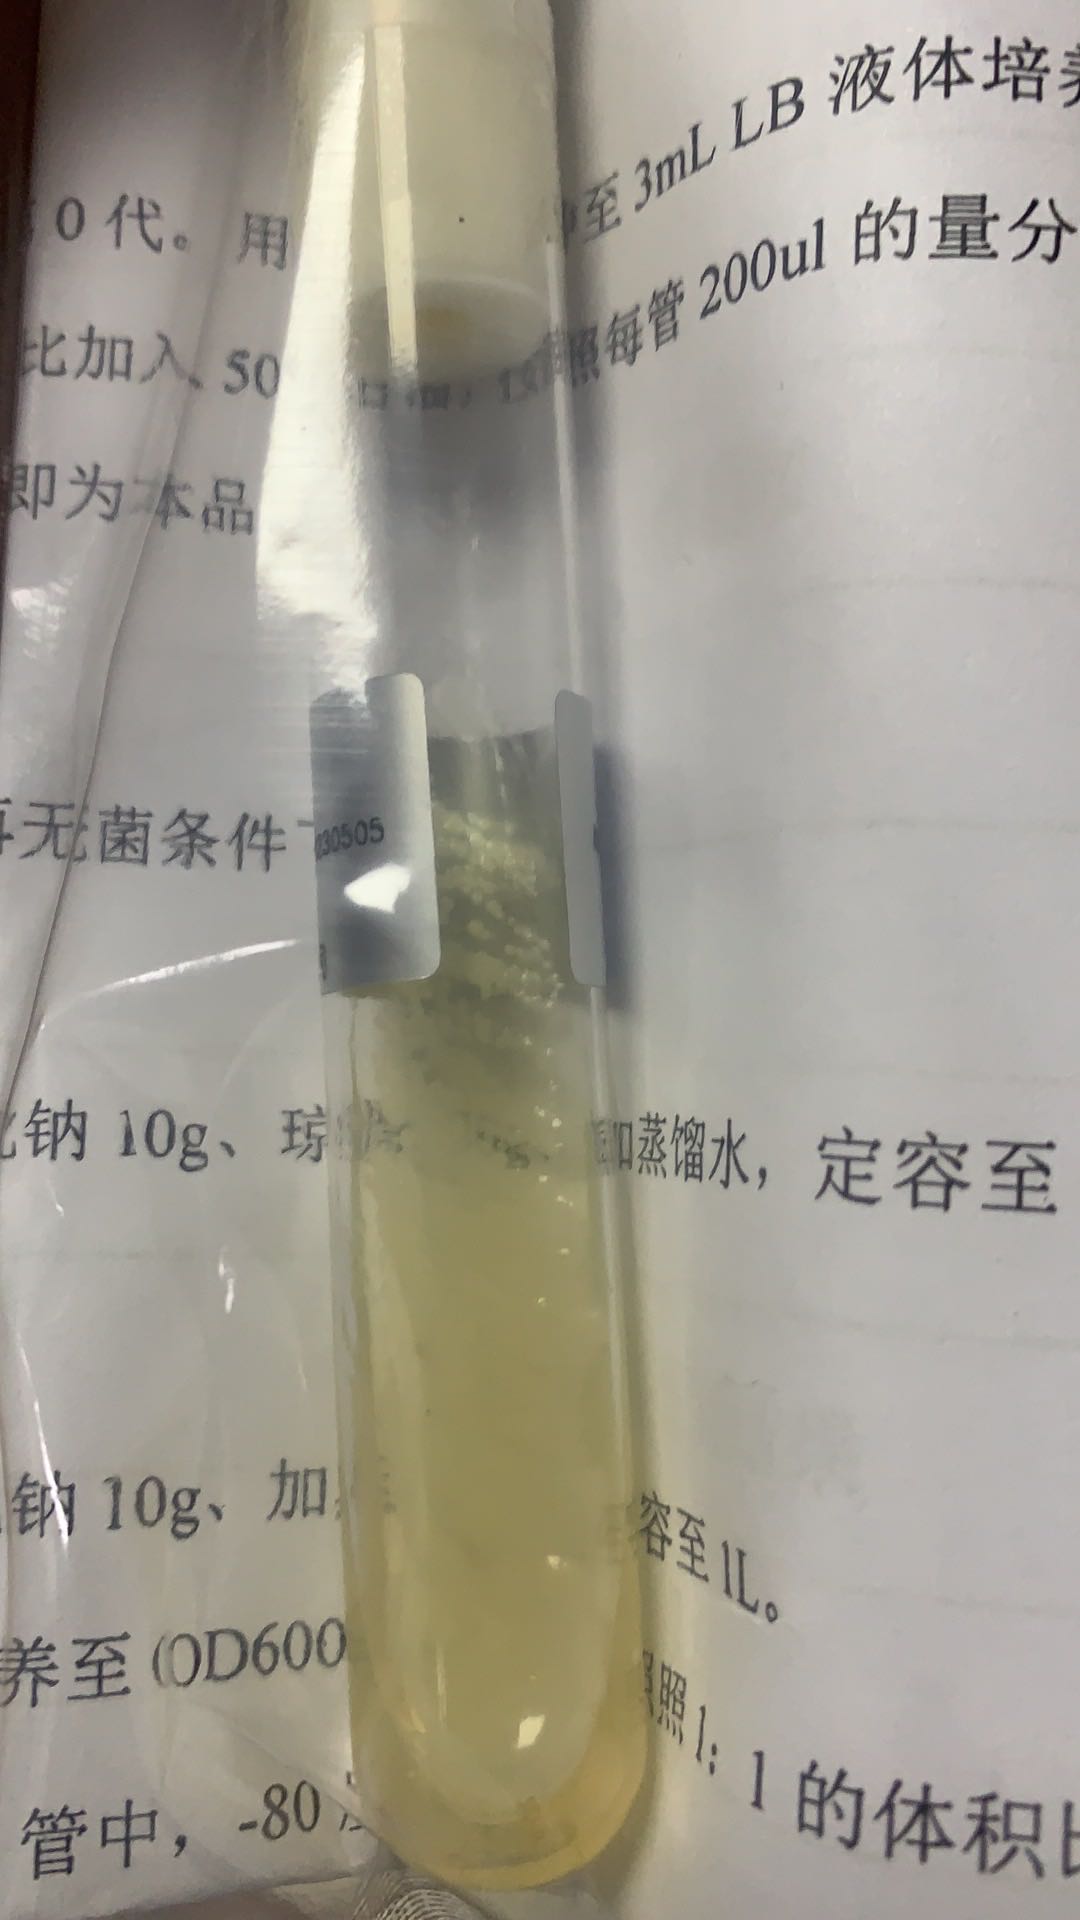 提供金黄色葡萄球菌菌种_定量菌液金黄色葡萄球菌培养_上海晅科生物科技有限公司